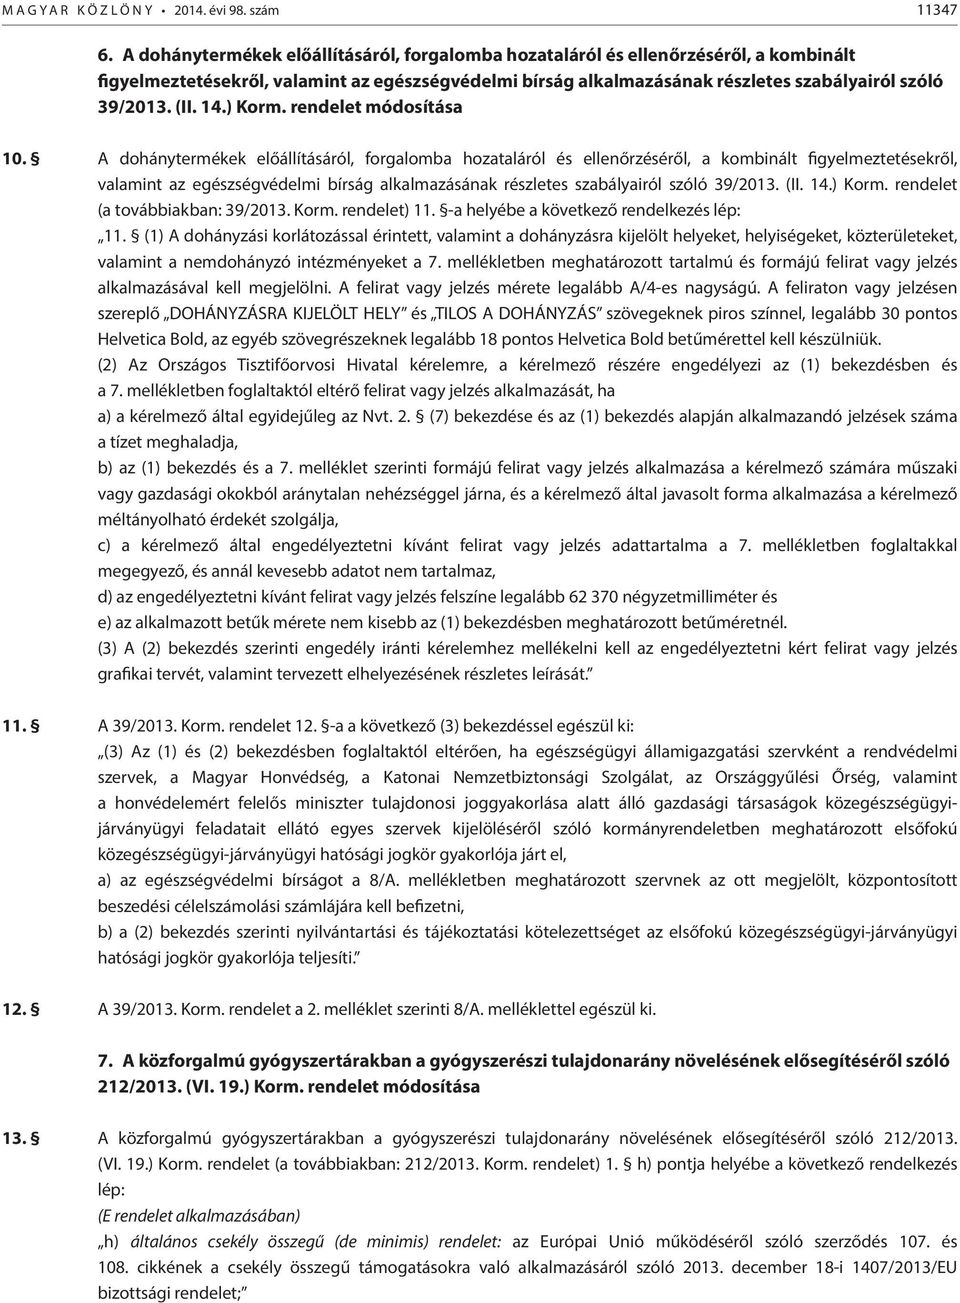 14.) Korm. rendelet módosítása 10.  14.) Korm. rendelet (a továbbiakban: 39/2013. Korm. rendelet) 11. -a helyébe a következő rendelkezés lép: 11.